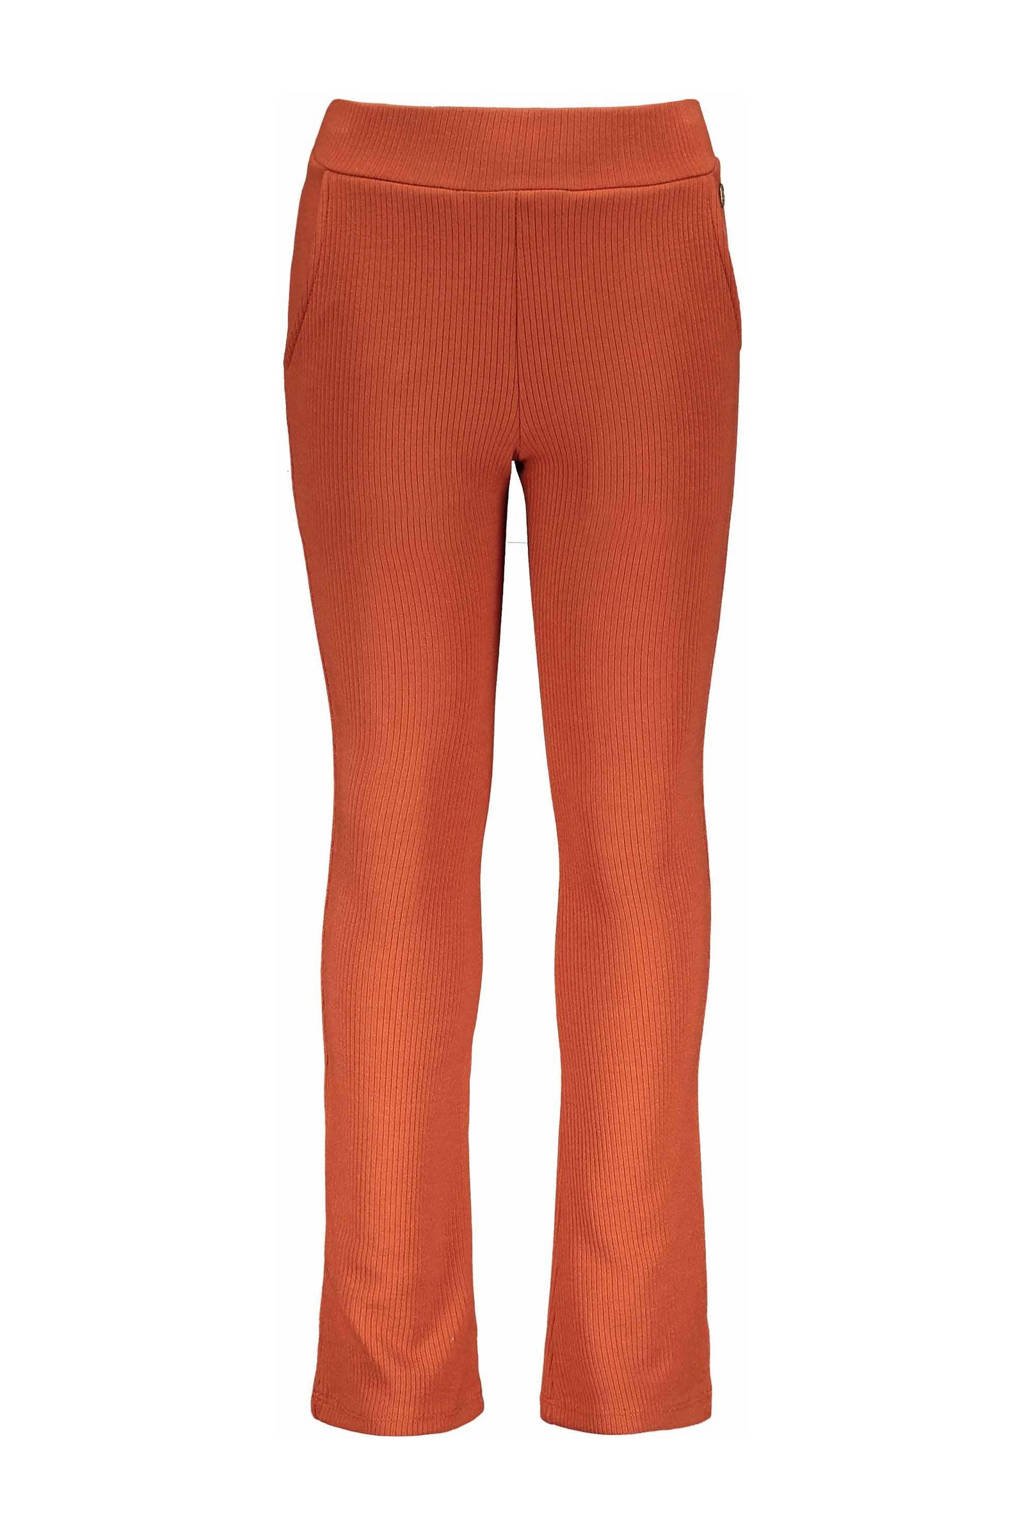 Like Flo flared broek met textuur oranje